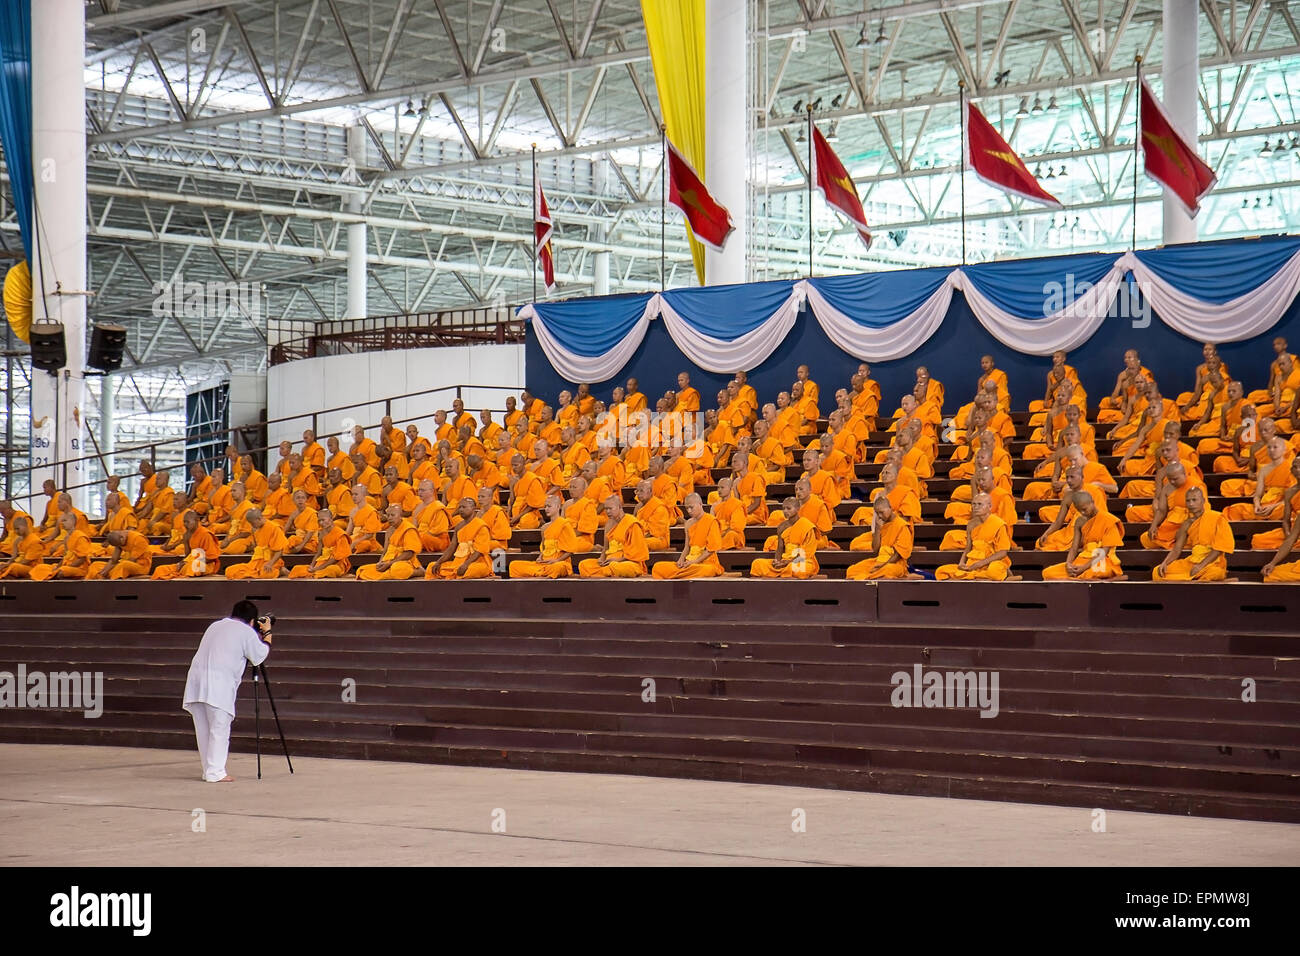 Man photographing praying monks at the Wat Phra Dhammakaya Stock Photo